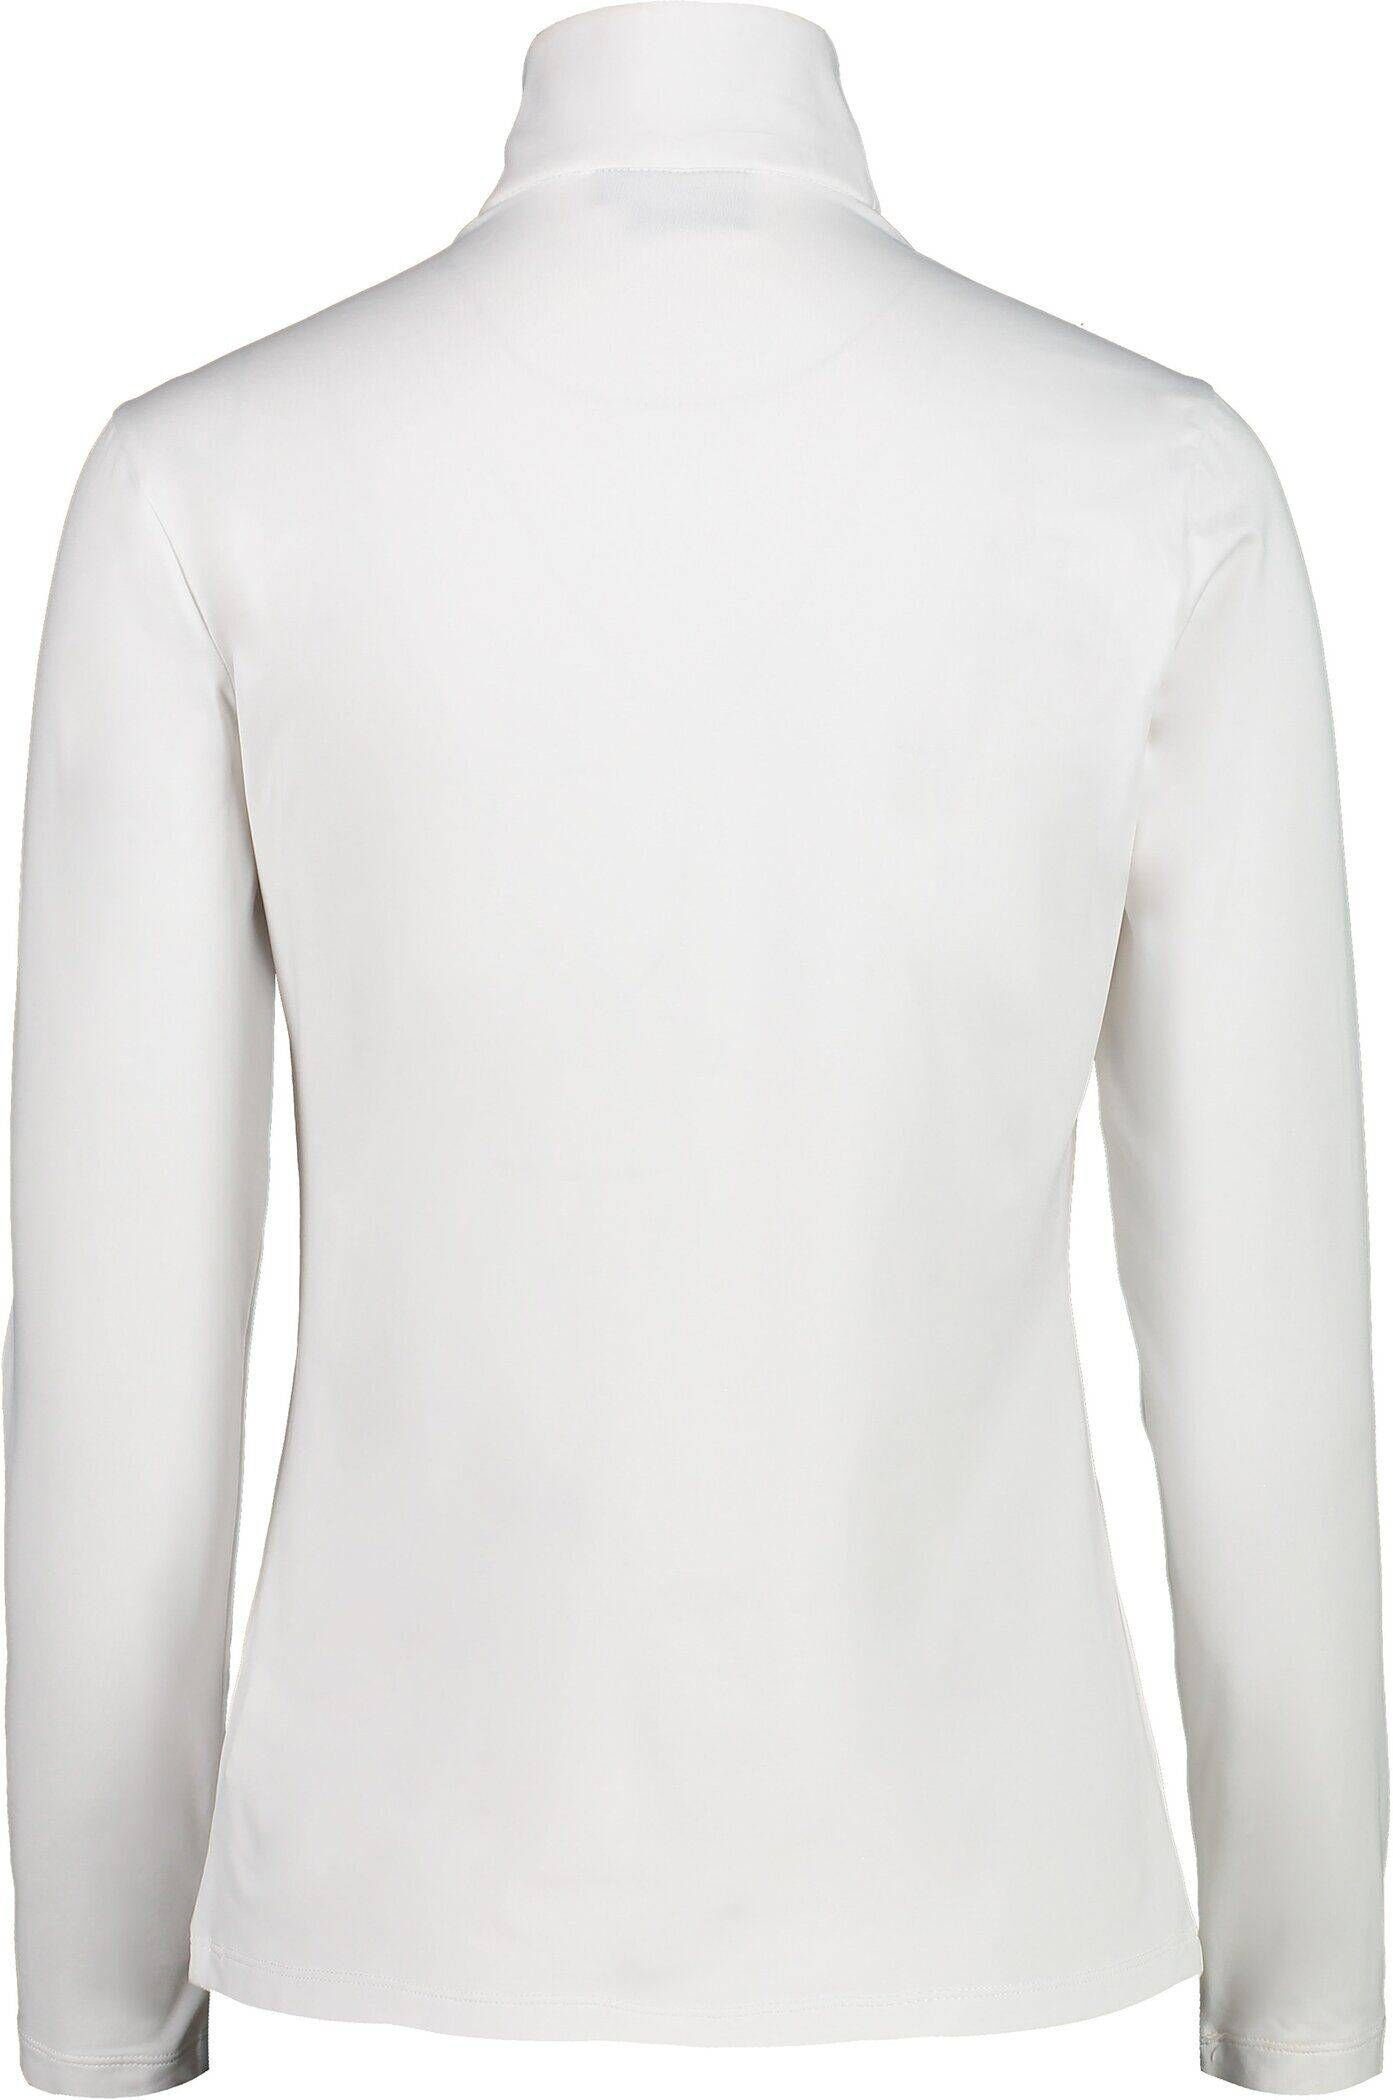 (100) CMP Trainingsjacke weiß Sweatshirt Damen